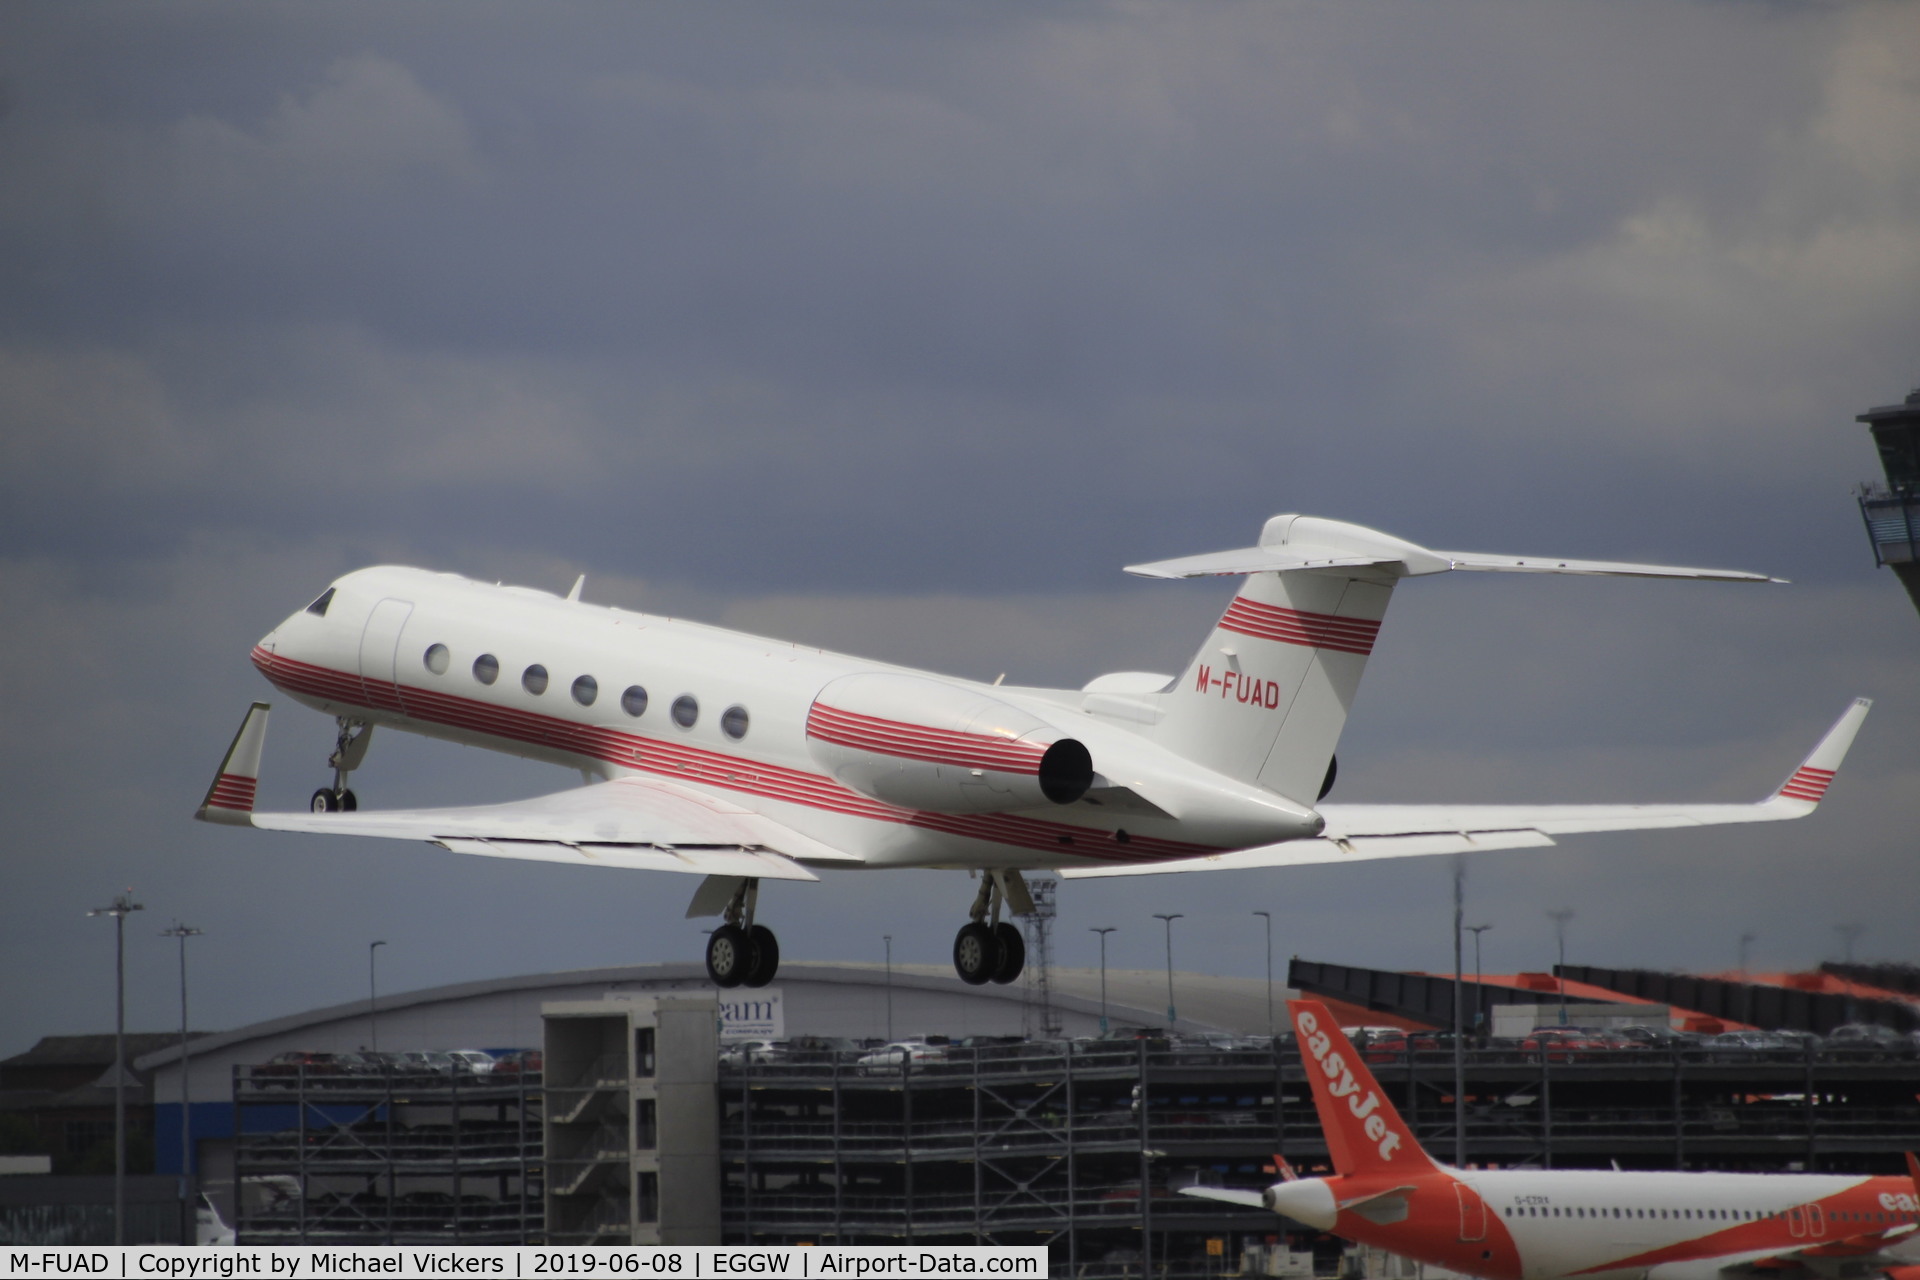 M-FUAD, 2009 Gulfstream Aerospace V-SP G550 C/N 5227, Departin from runway 26